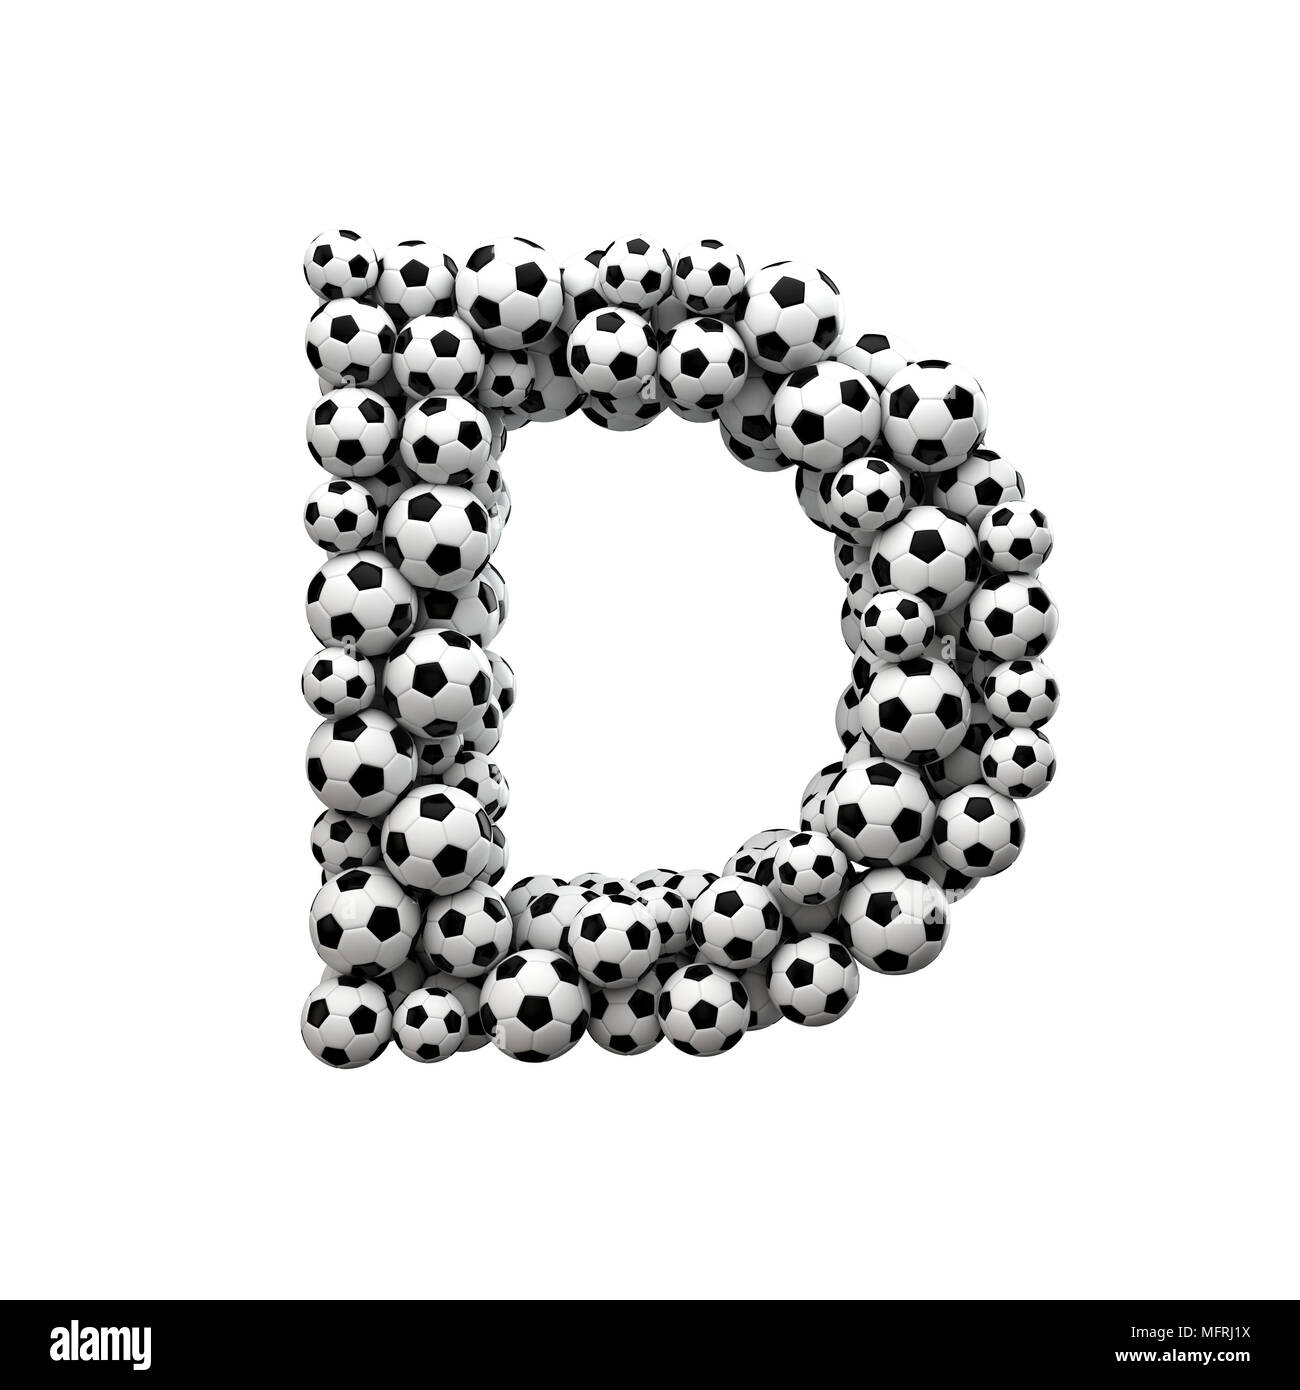 Letra mayúscula D font hechas a partir de una colección de balones de fútbol. 3D Rendering Foto de stock